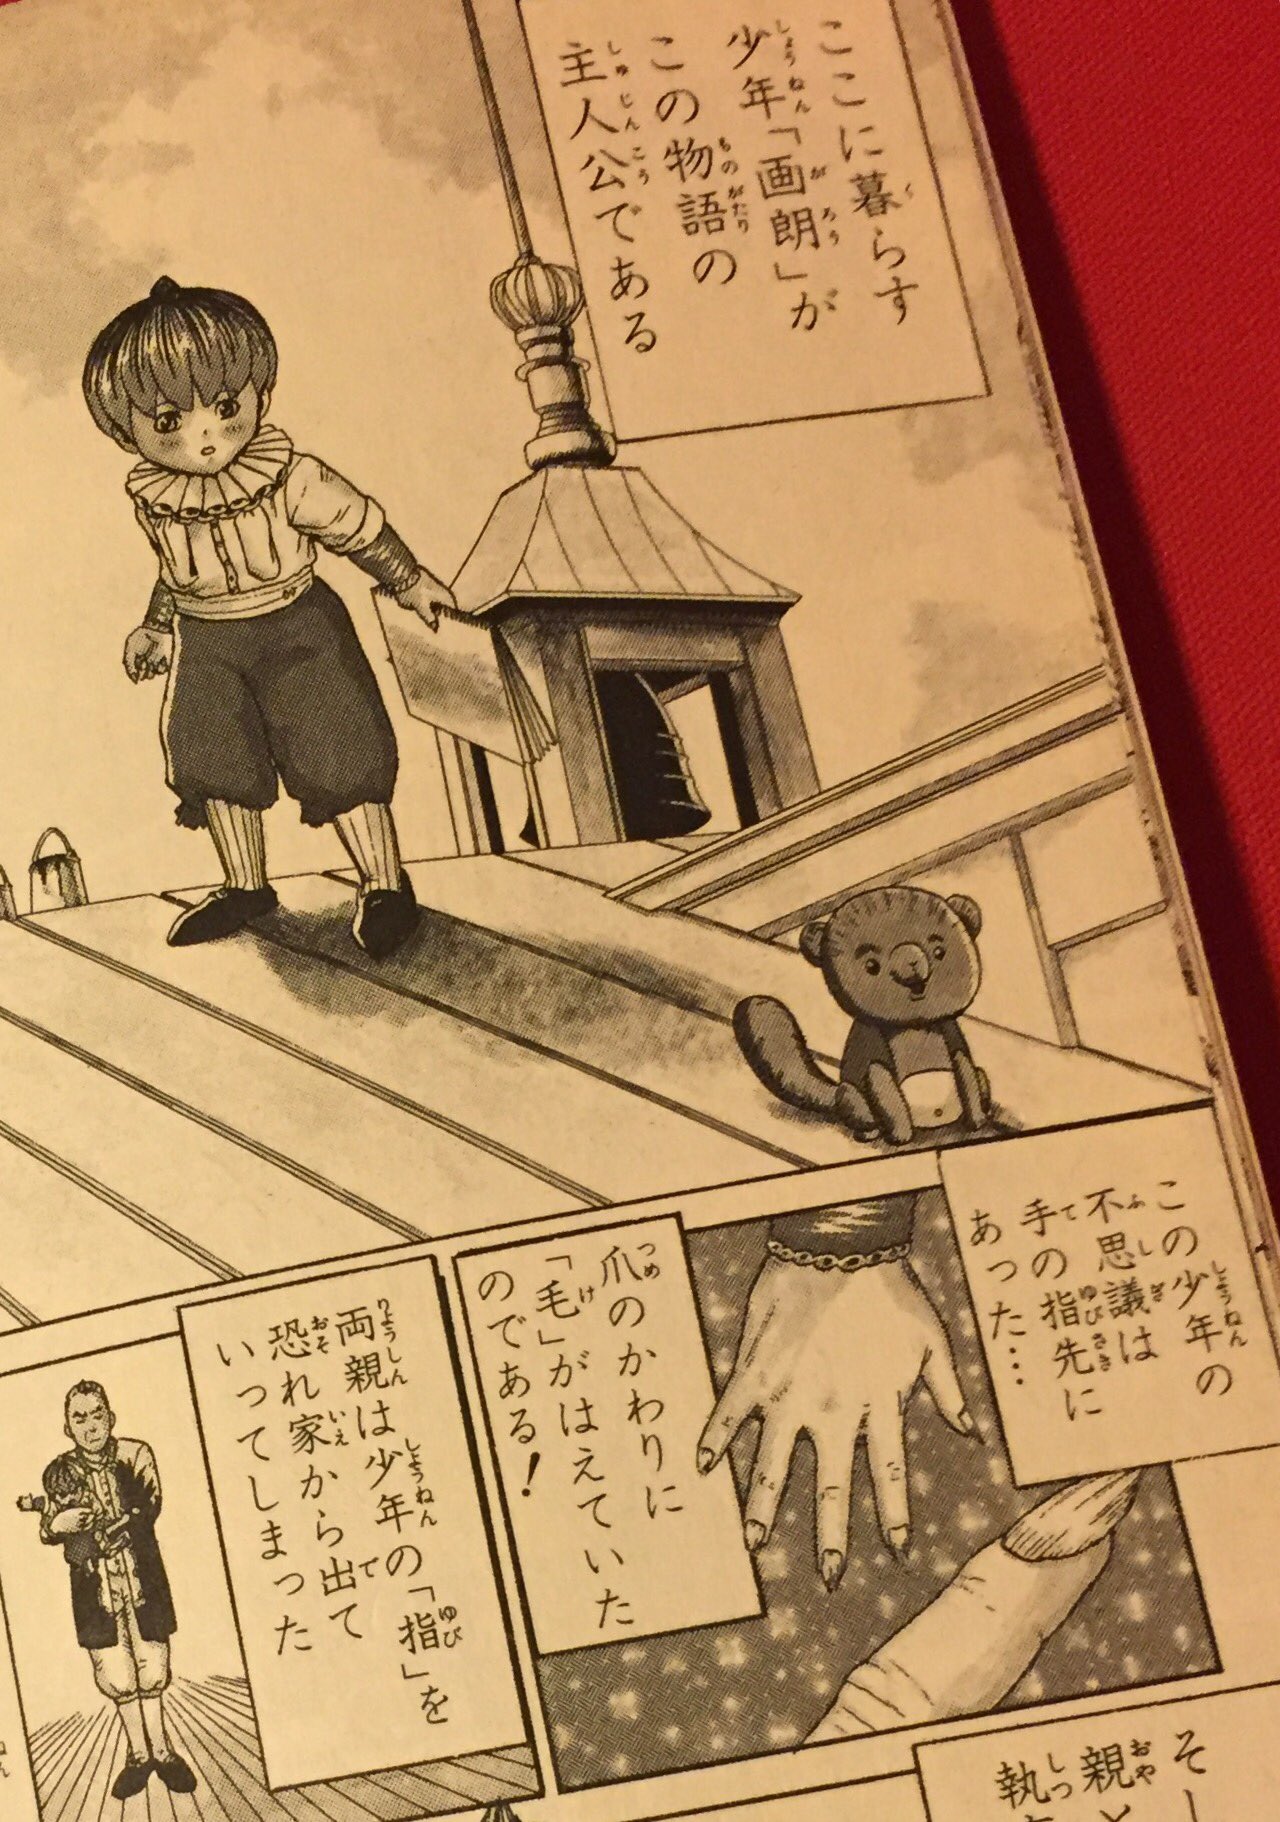 モシモフキヲ 画 Row 水元昭嗣 1998 奇妙な漫画で好きだったのですが 単行本一冊分で打ち切りになりました ジャンプそんな漫画あったな選手権